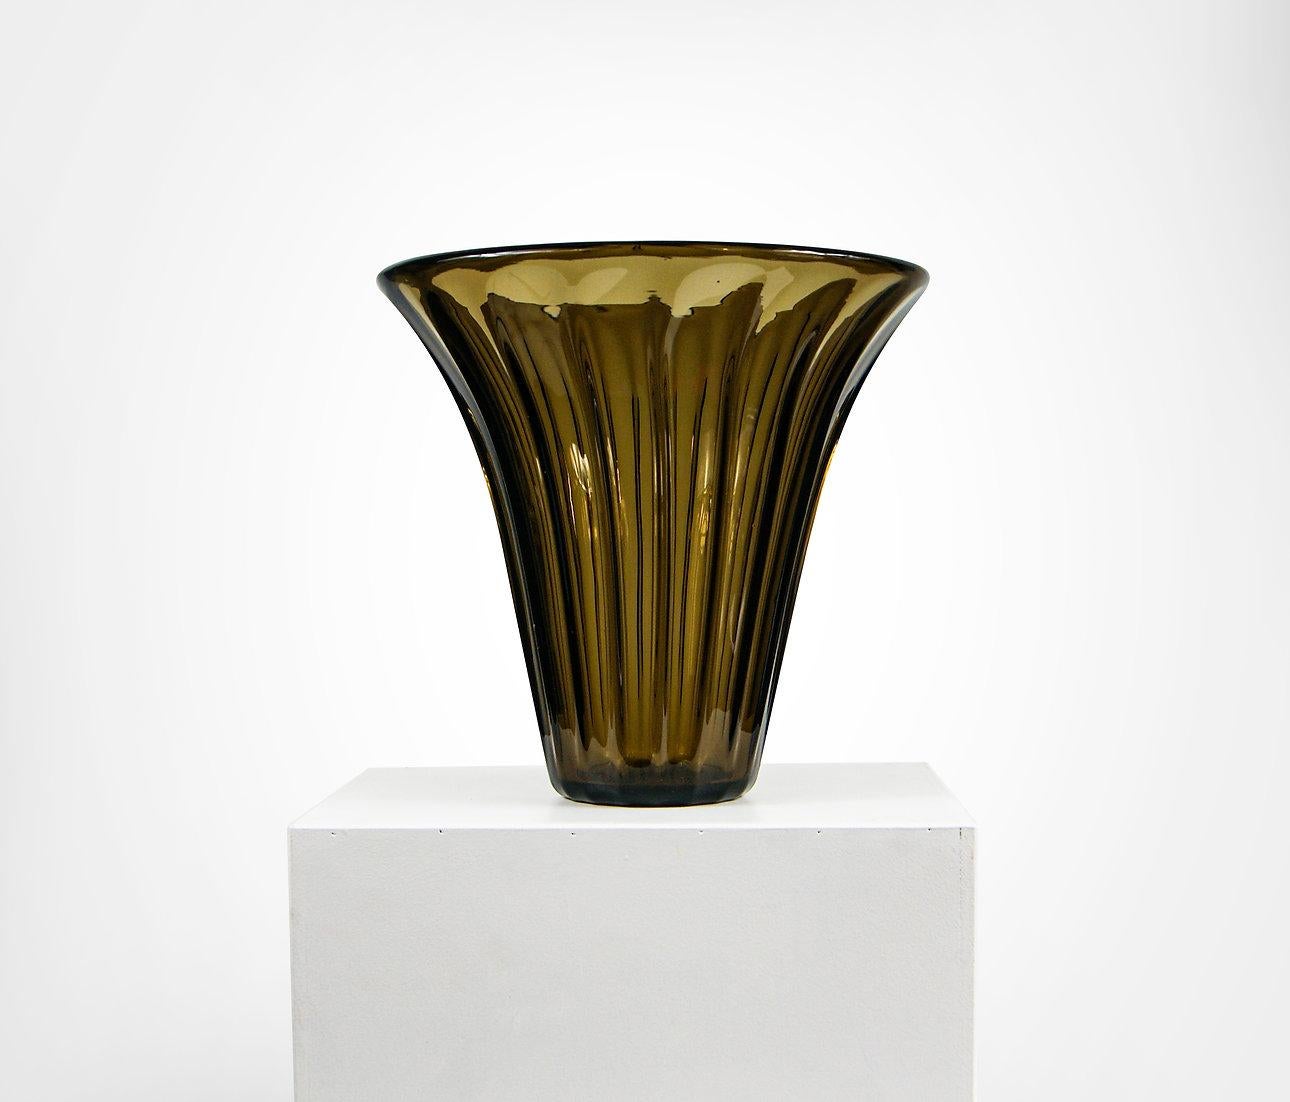 Art Déco Bernsteinglasvase von Daum Nancy Frankreich.
Spektakuläre dickwandige Vase aus Braunglas.
Großformatig, ideal für Blumen oder als dekoratives Mittelstück.
Signiert 